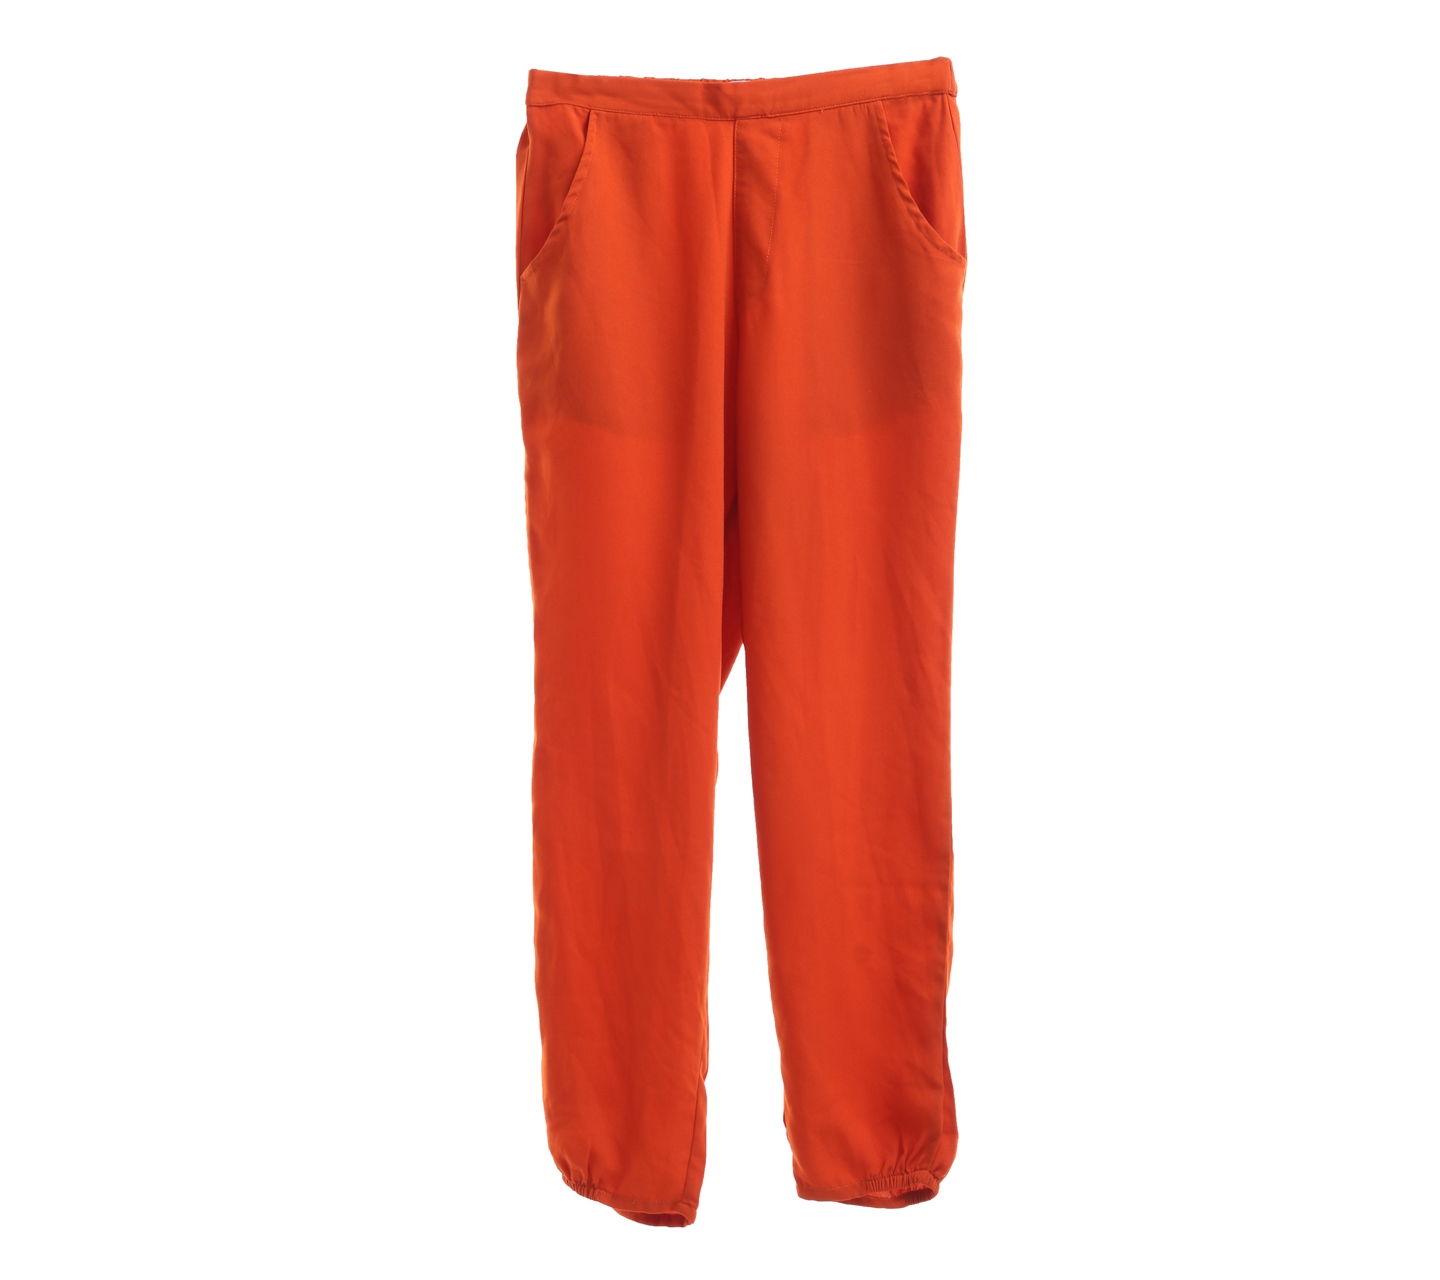 Gaudi Dark Orange Long Pants